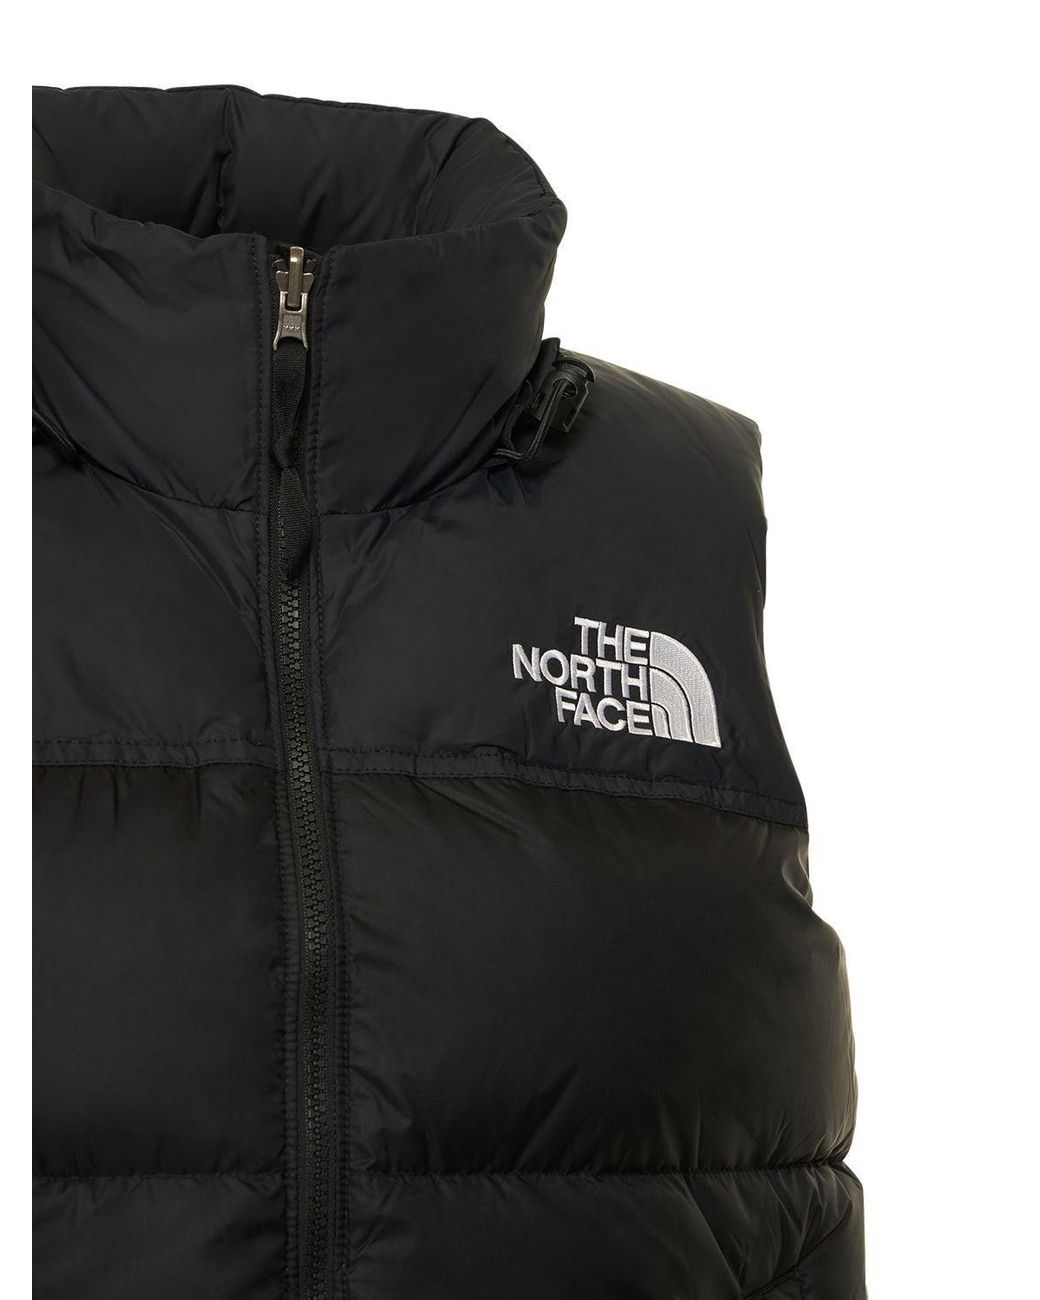 The North Face 1996 Retro Nuptse Down Vest in Black | Lyst